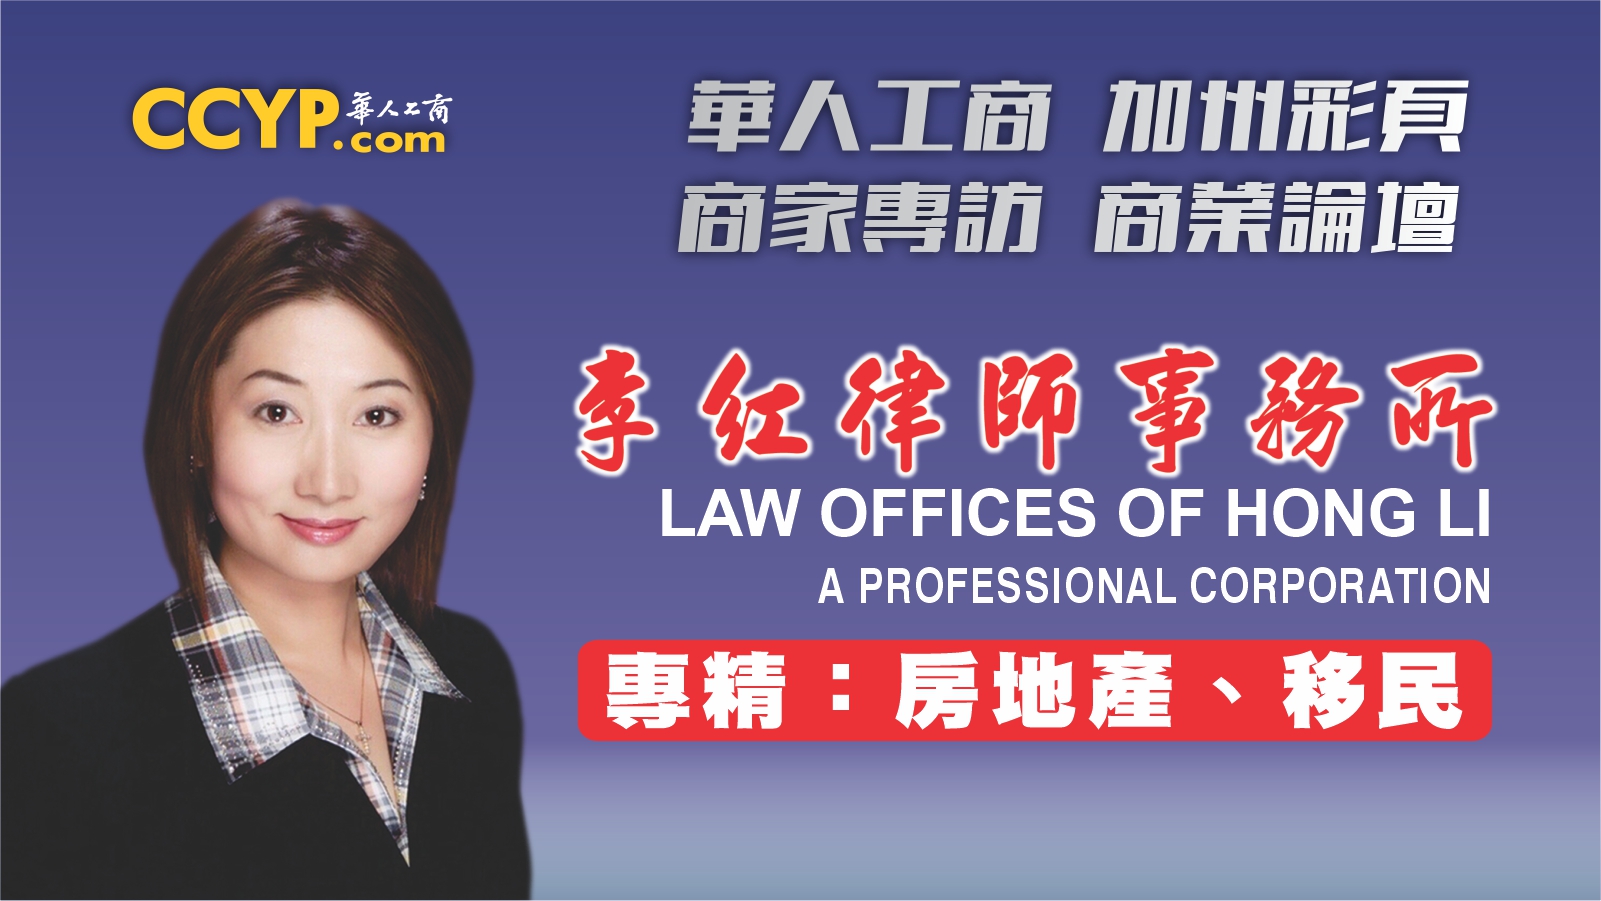 【商業論壇】發生家庭暴力應該怎麼辦？| Law Offices of Hong Li李紅律師事務所